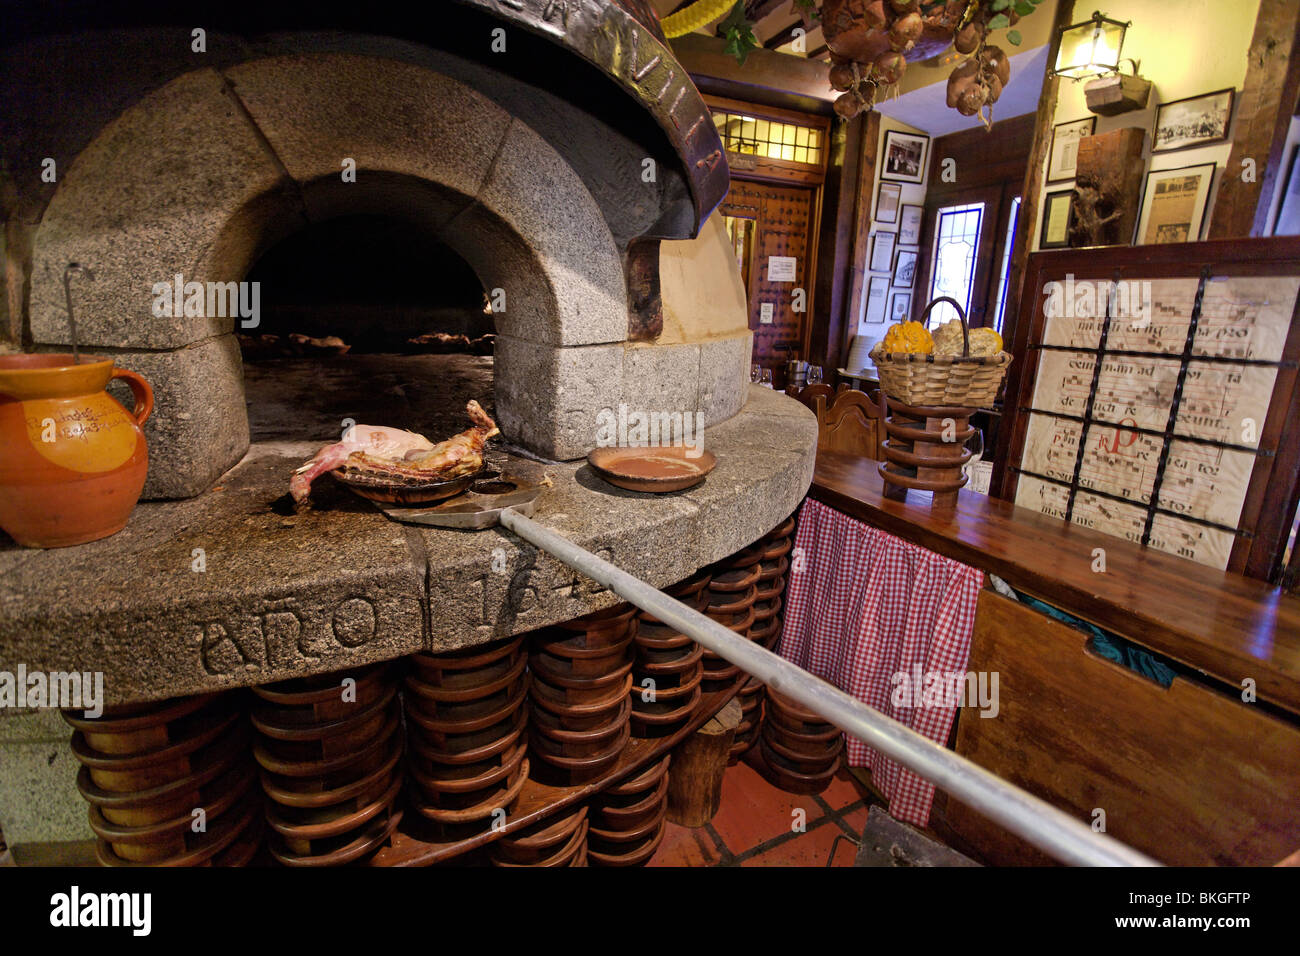 Arrosto di agnello preparato in un forno a legna, la posada de la Villa,  Cava Baja, Madrid, Spagna Foto stock - Alamy